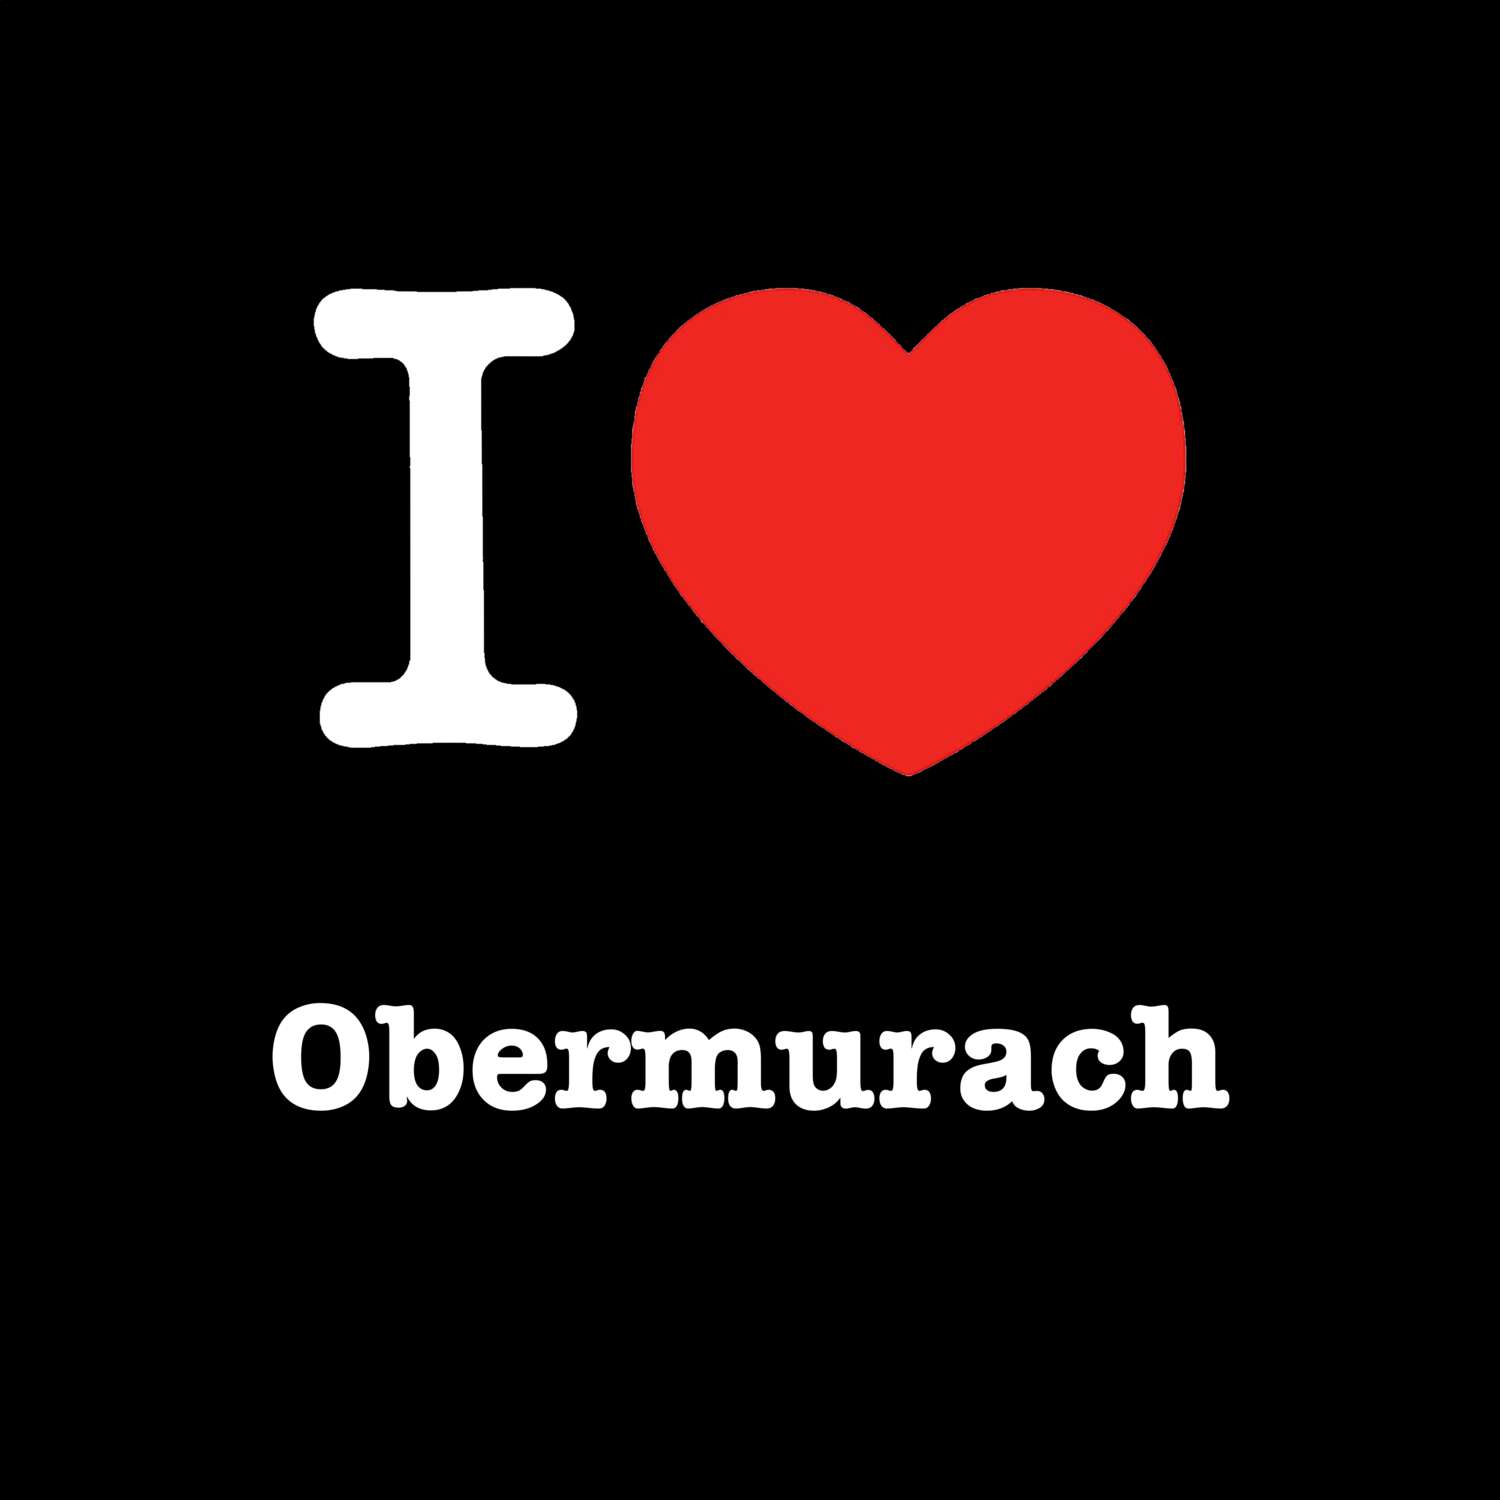 Obermurach T-Shirt »I love«